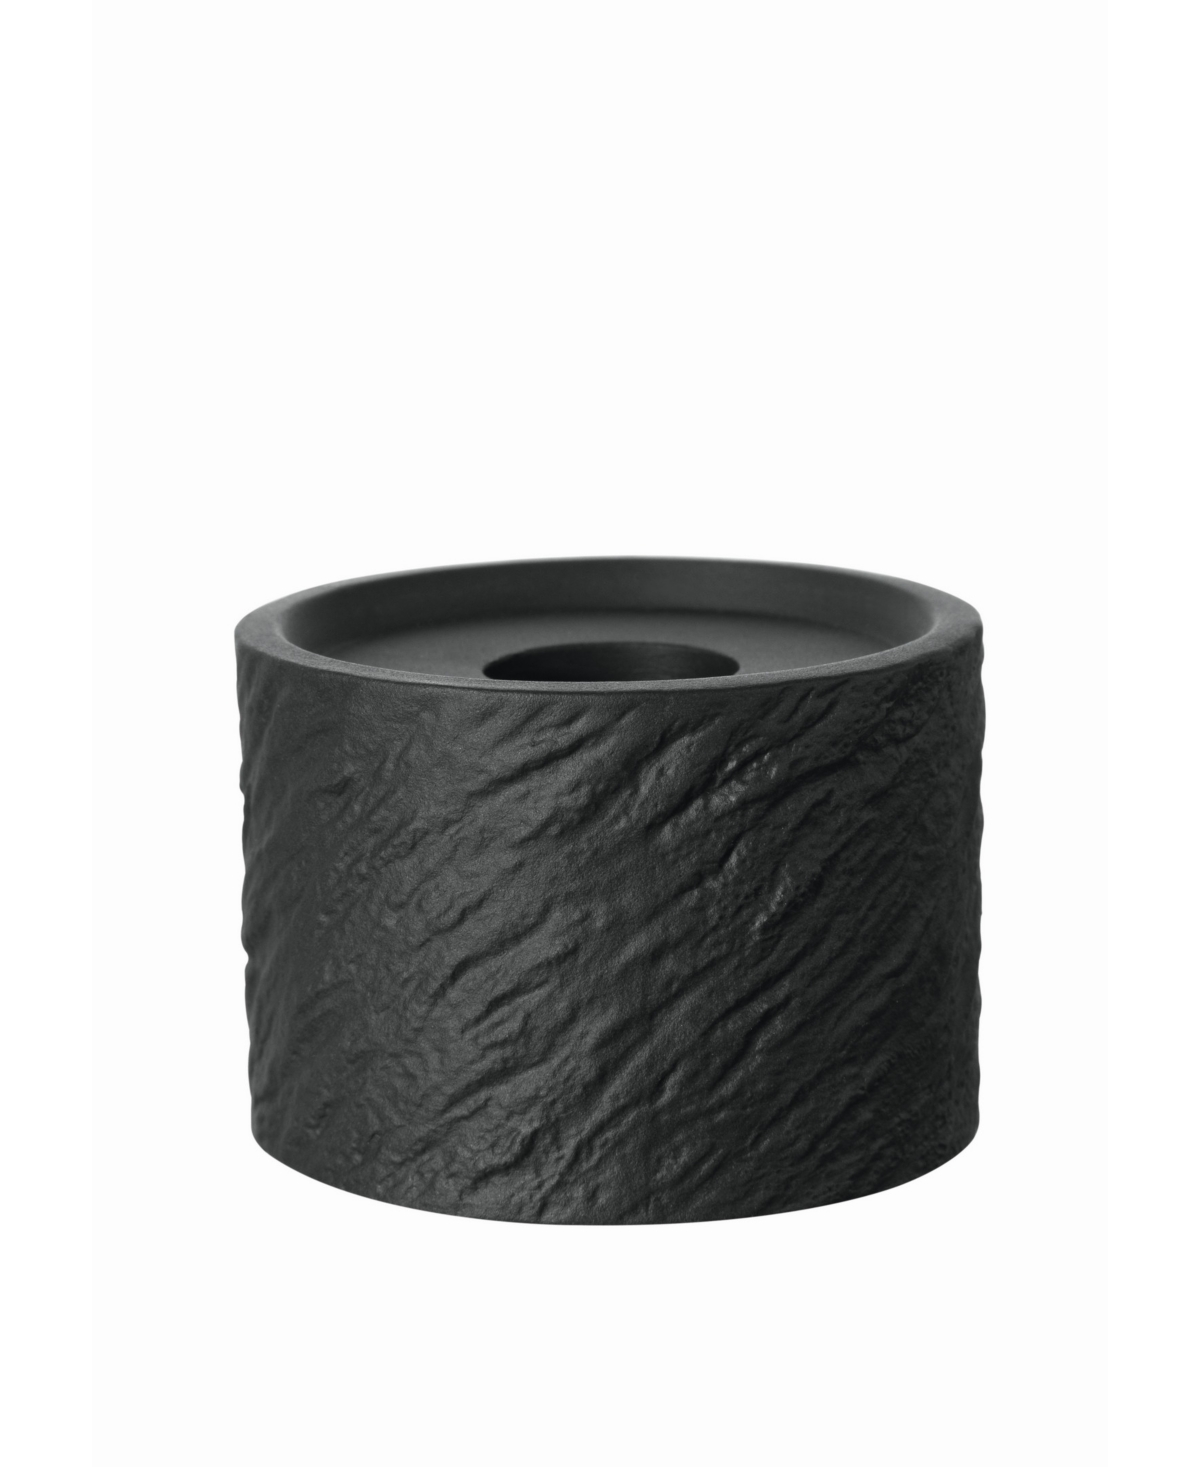 Villeroy & Boch Manufacture Rock Home Candleholder In Black